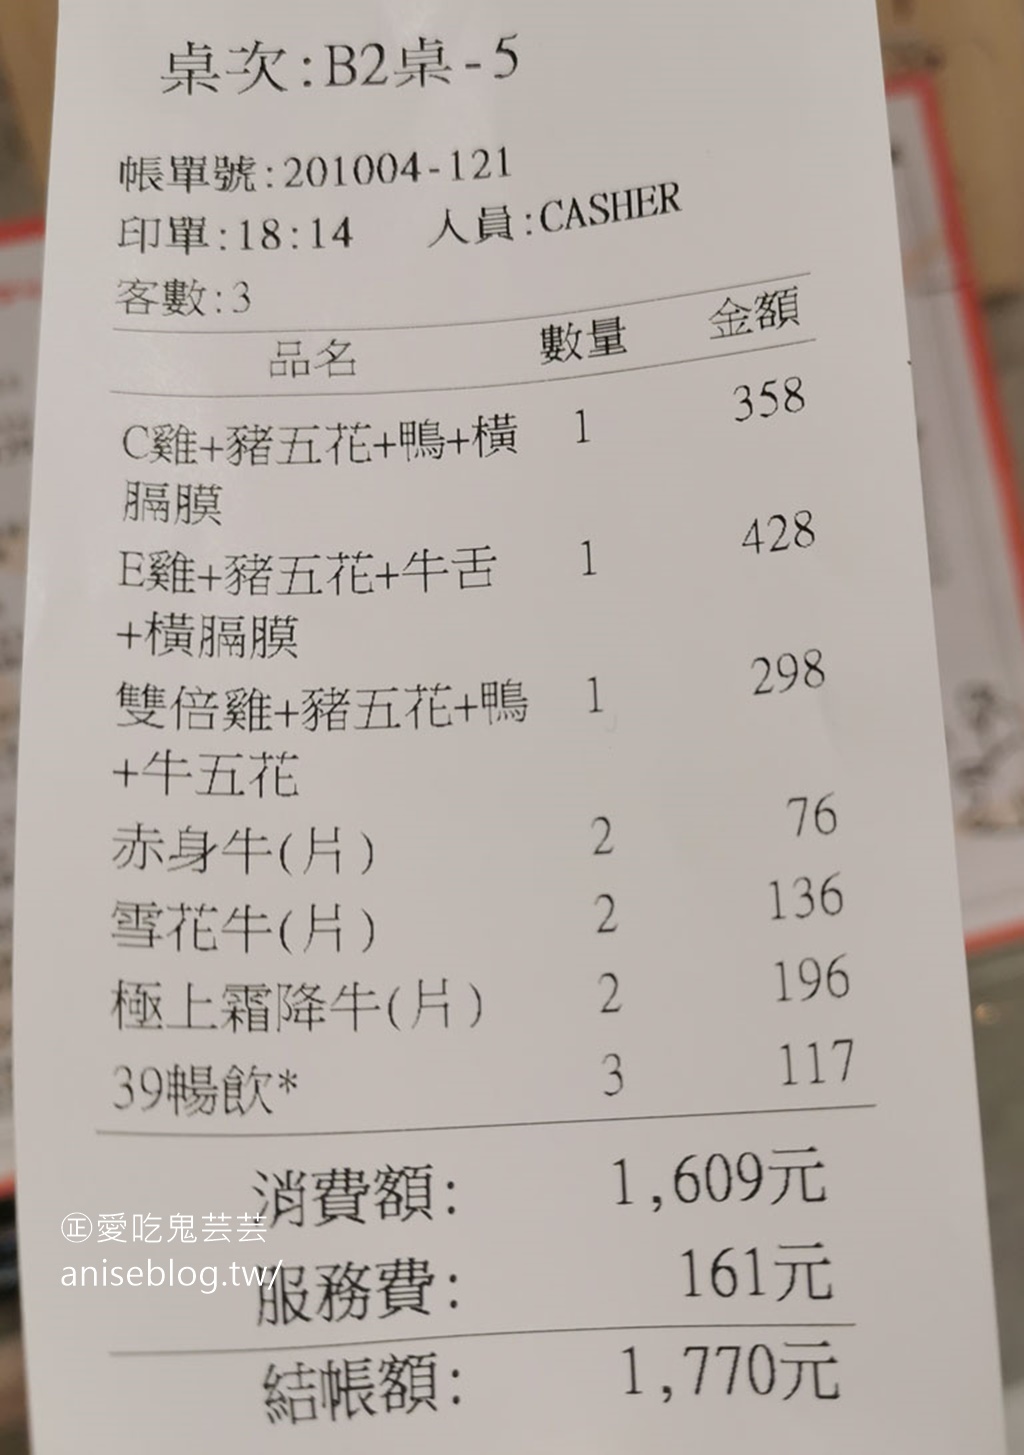 鉄火燒肉(微風北車店)，個人套餐$198起，挑戰日本A5和牛最低價，一片 $38起！